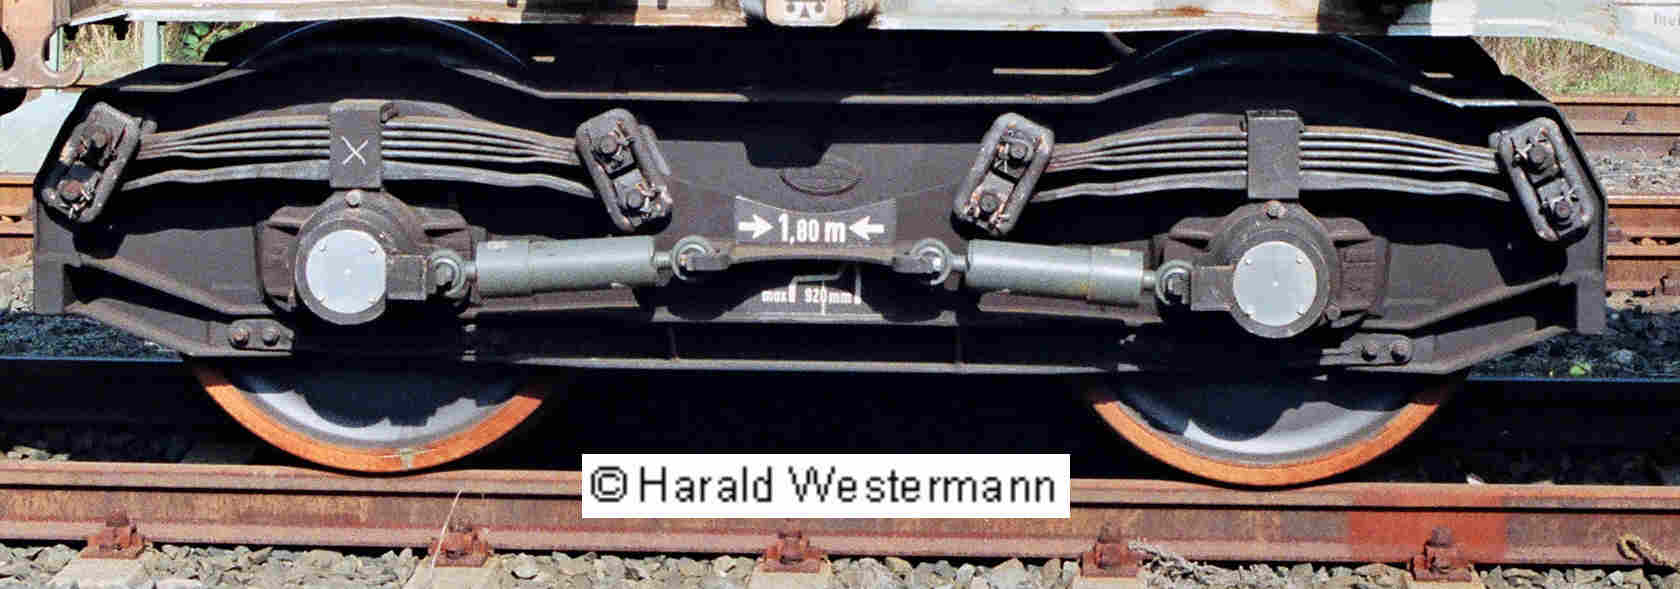 LHB 93 R (Schnellfahrdrehgestell, abgeleitet aus LHB 82); Foto: Harald Westermann